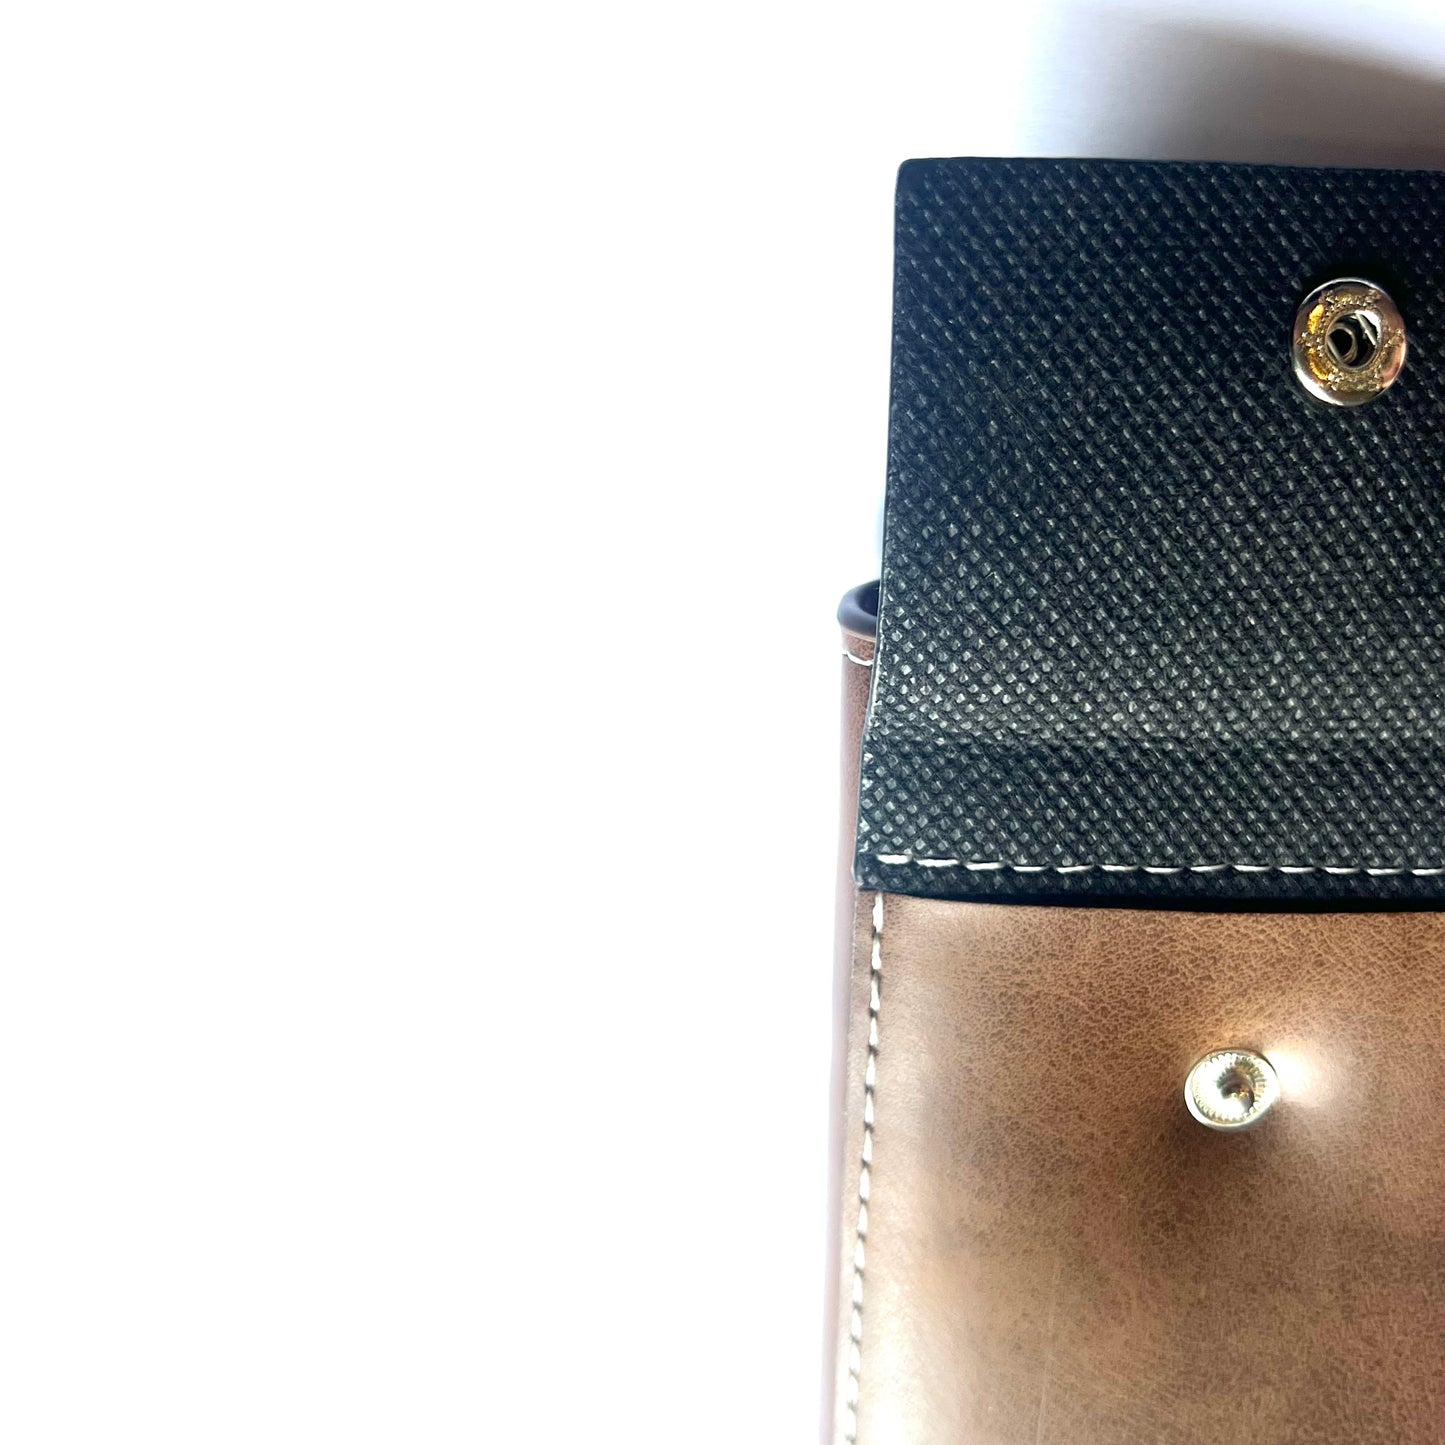 BIDENLI Leather Brown Bi-fold Long Wallet